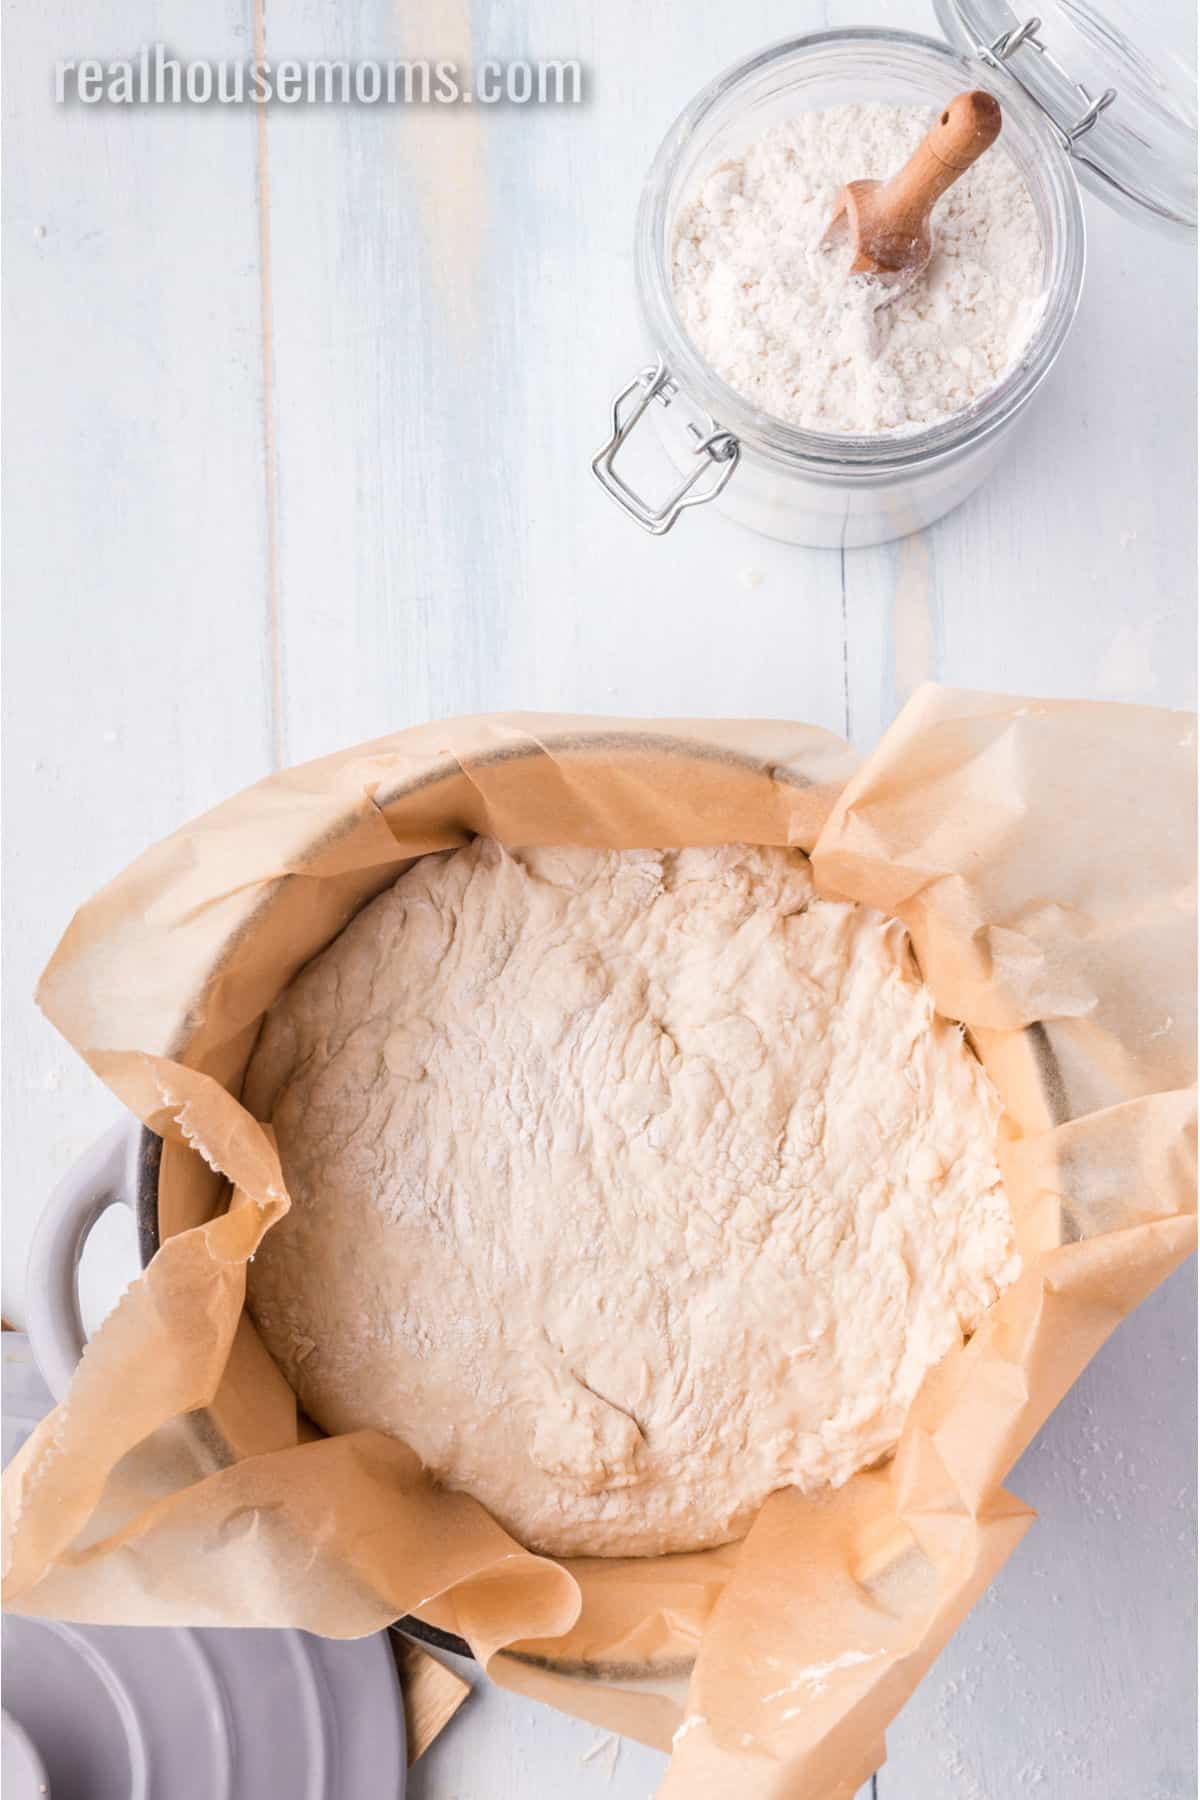 Dutch Oven Baking - Atta Durum Flour and K.A. Bread Flour